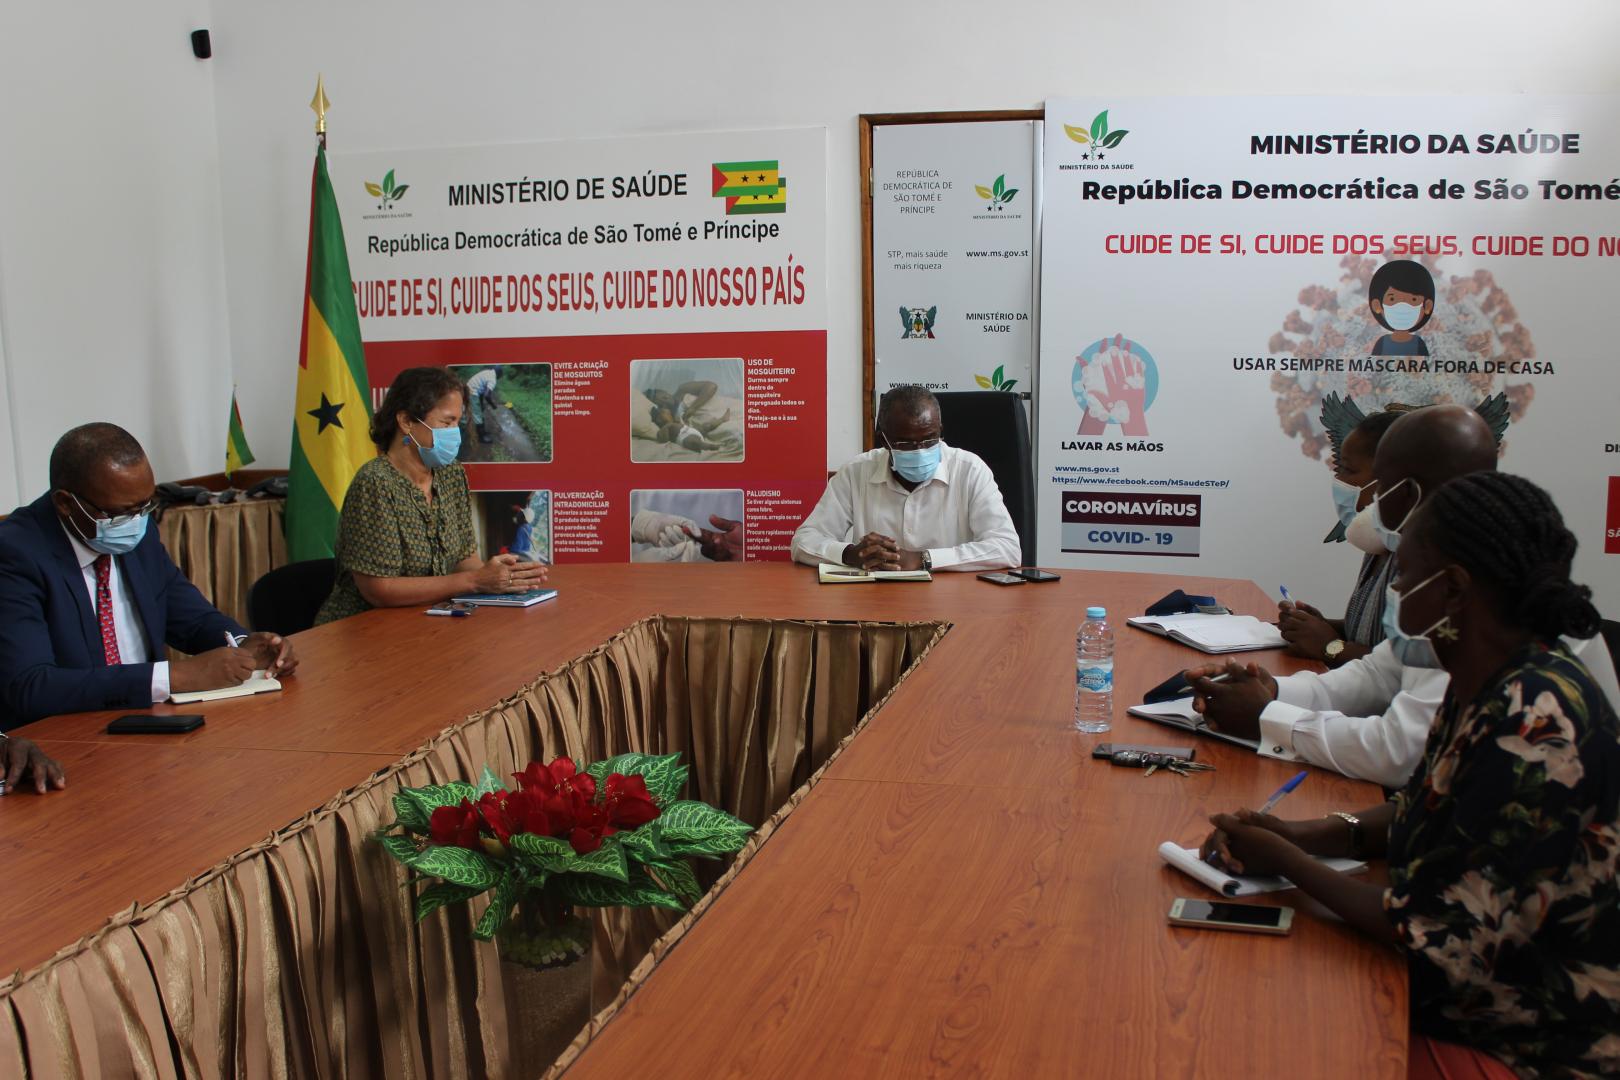 Ministério da - Ministério da Saúde - São Tomé e Príncipe